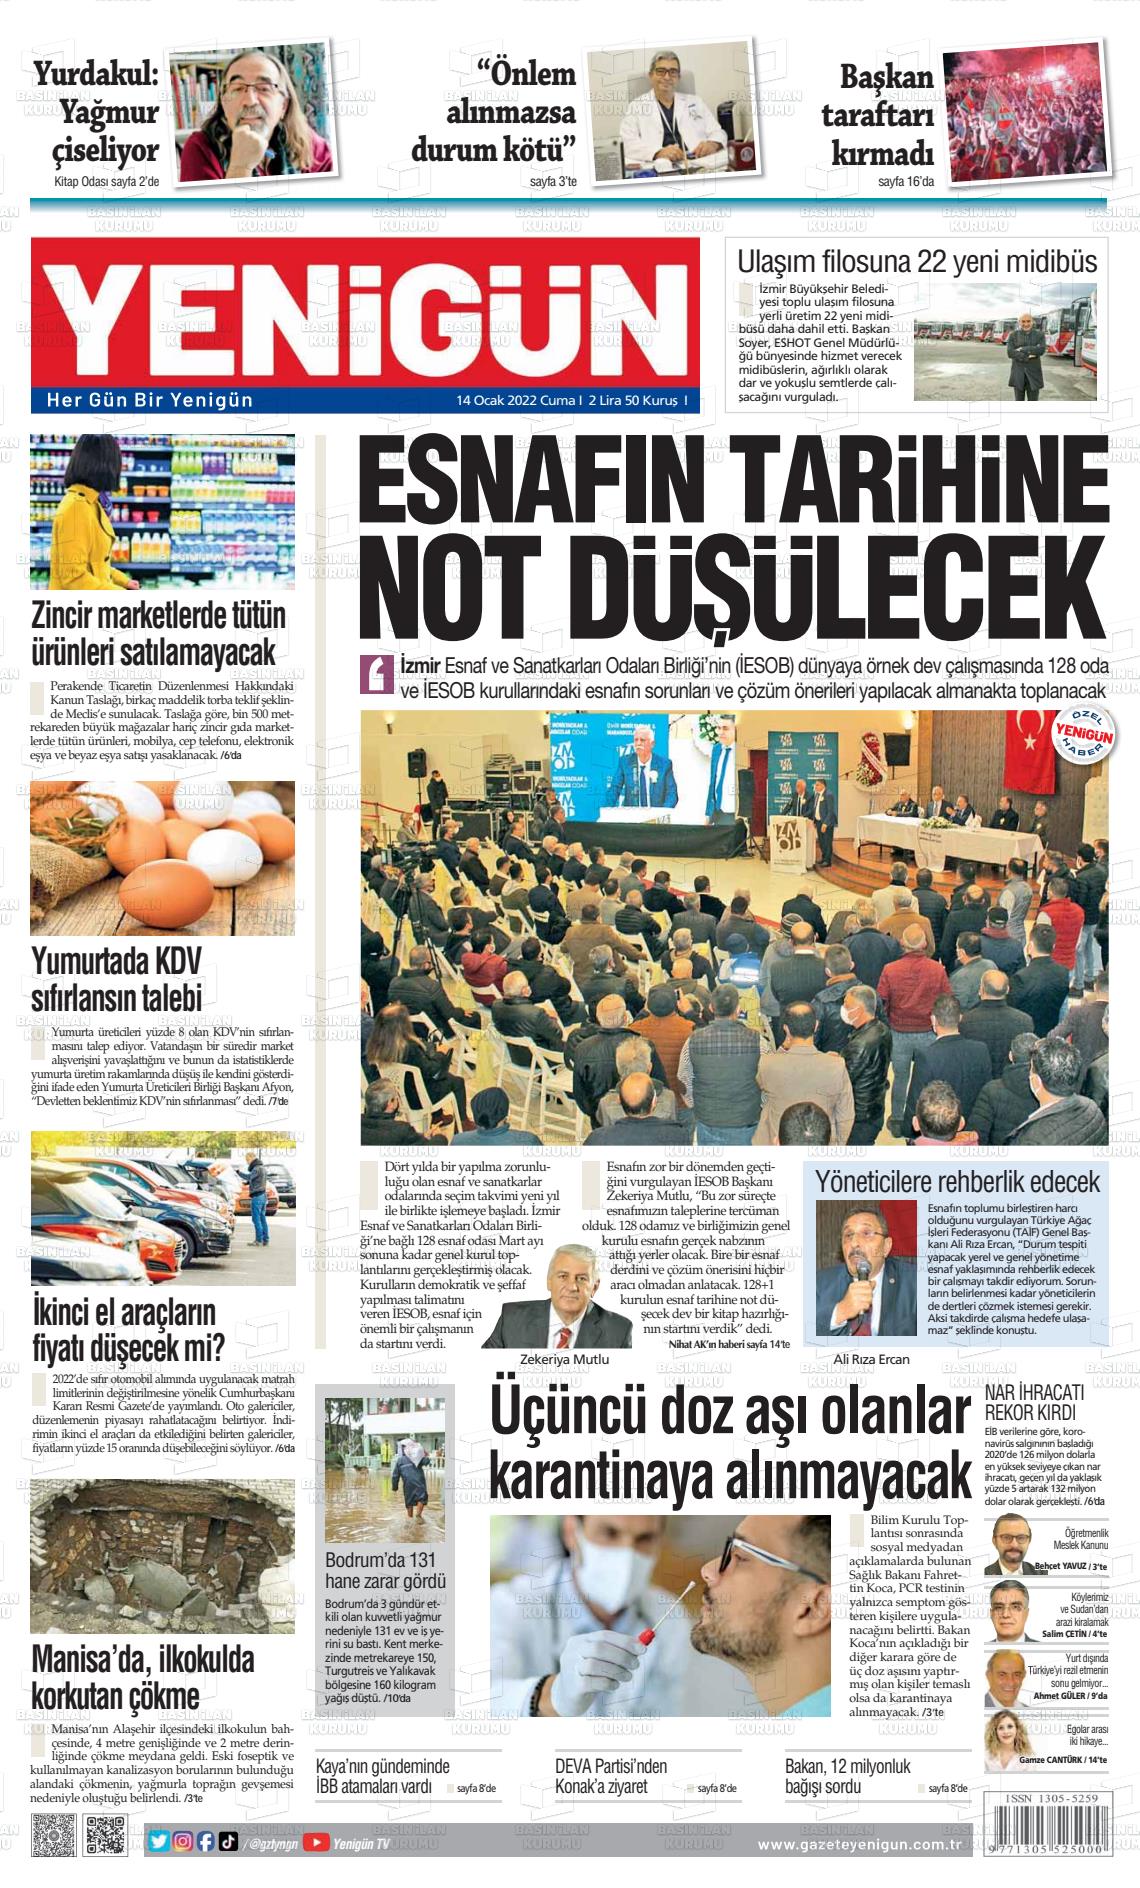 14 Ocak 2022 Yeni Gün Gazete Manşeti